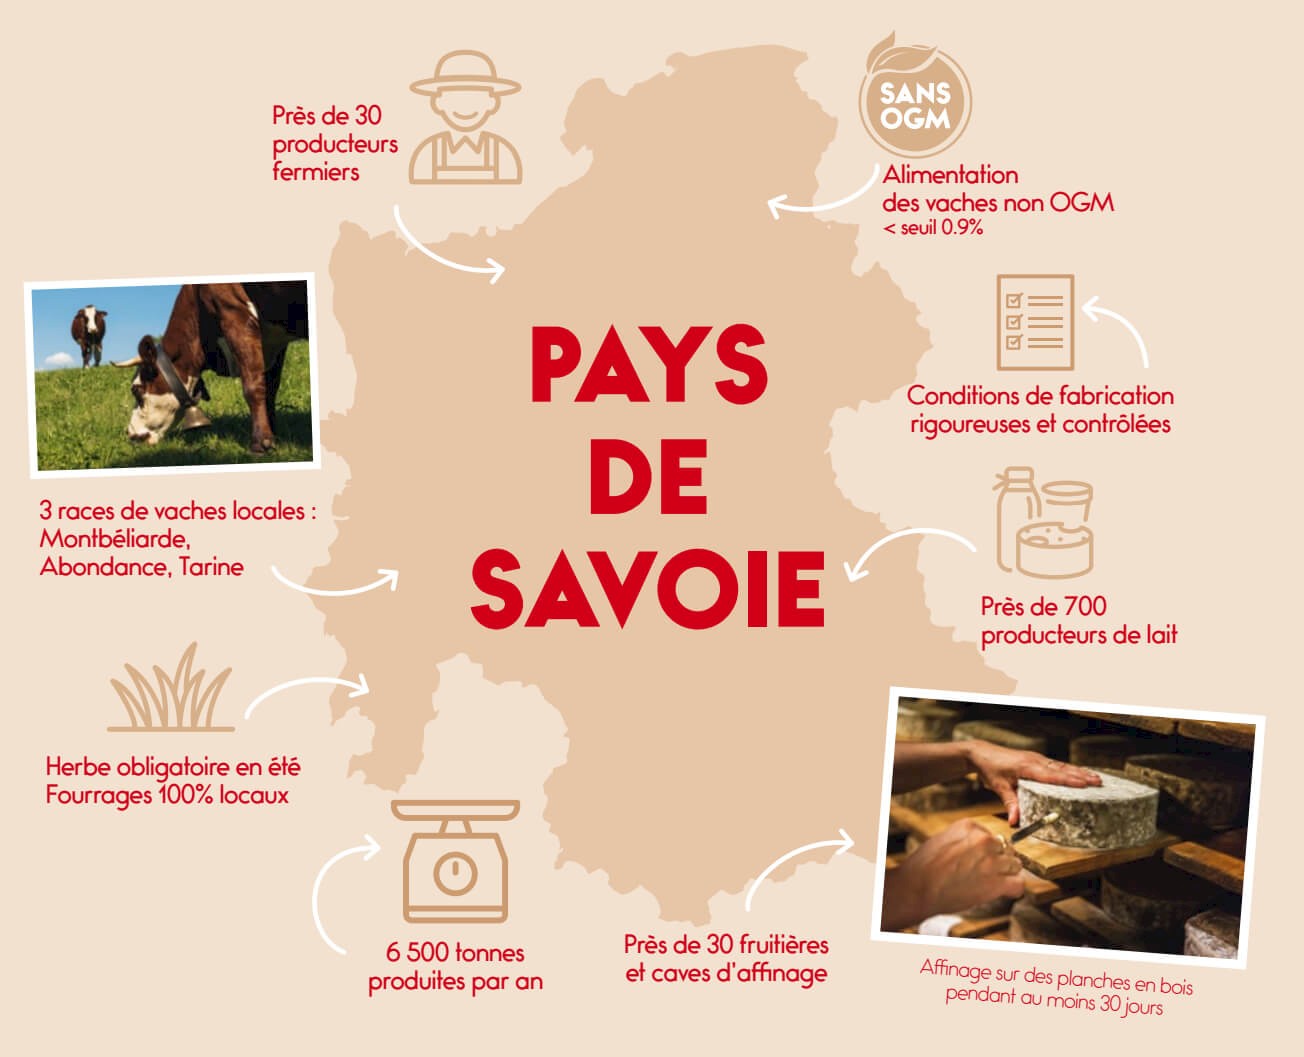 Pays de Savoie : 3 races de vache avec du lait sans OGM et cahier charges rigoureux de l'IGP.